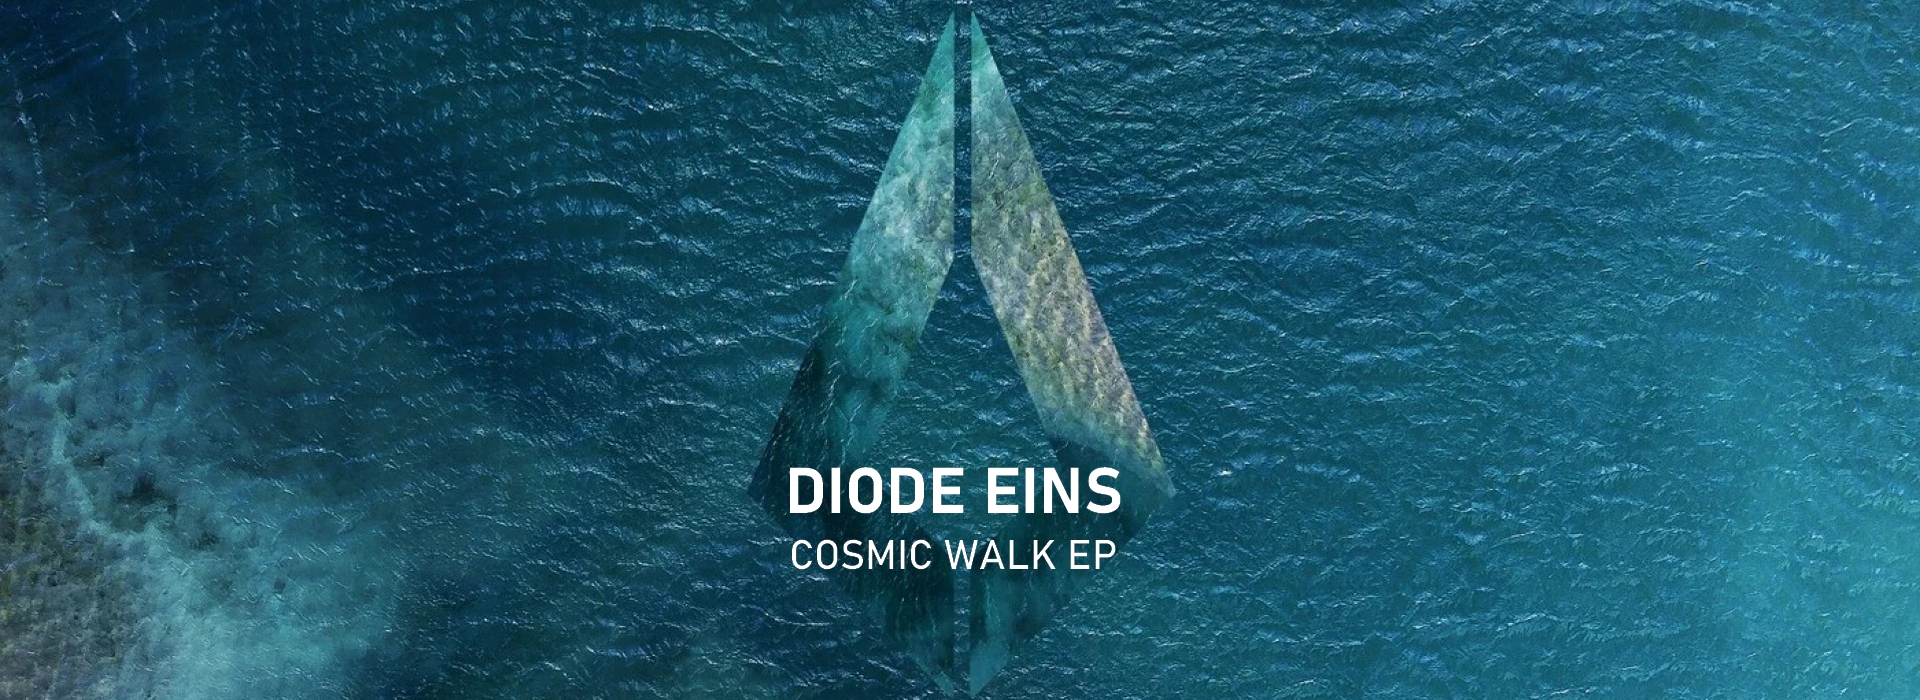 Diode Eins Cosmic Walk